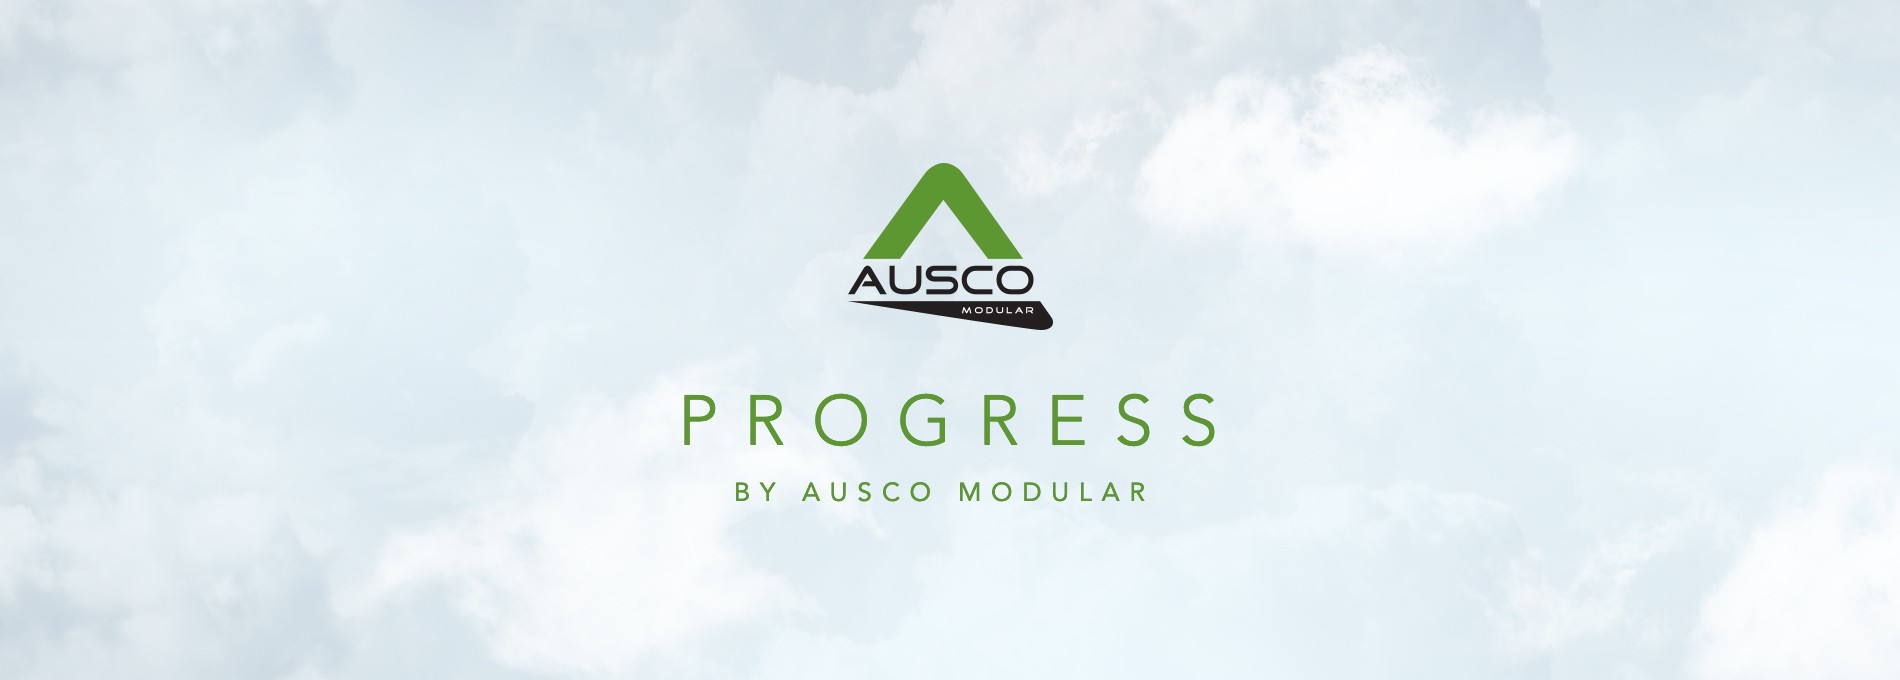 Progress by Ausco Modular